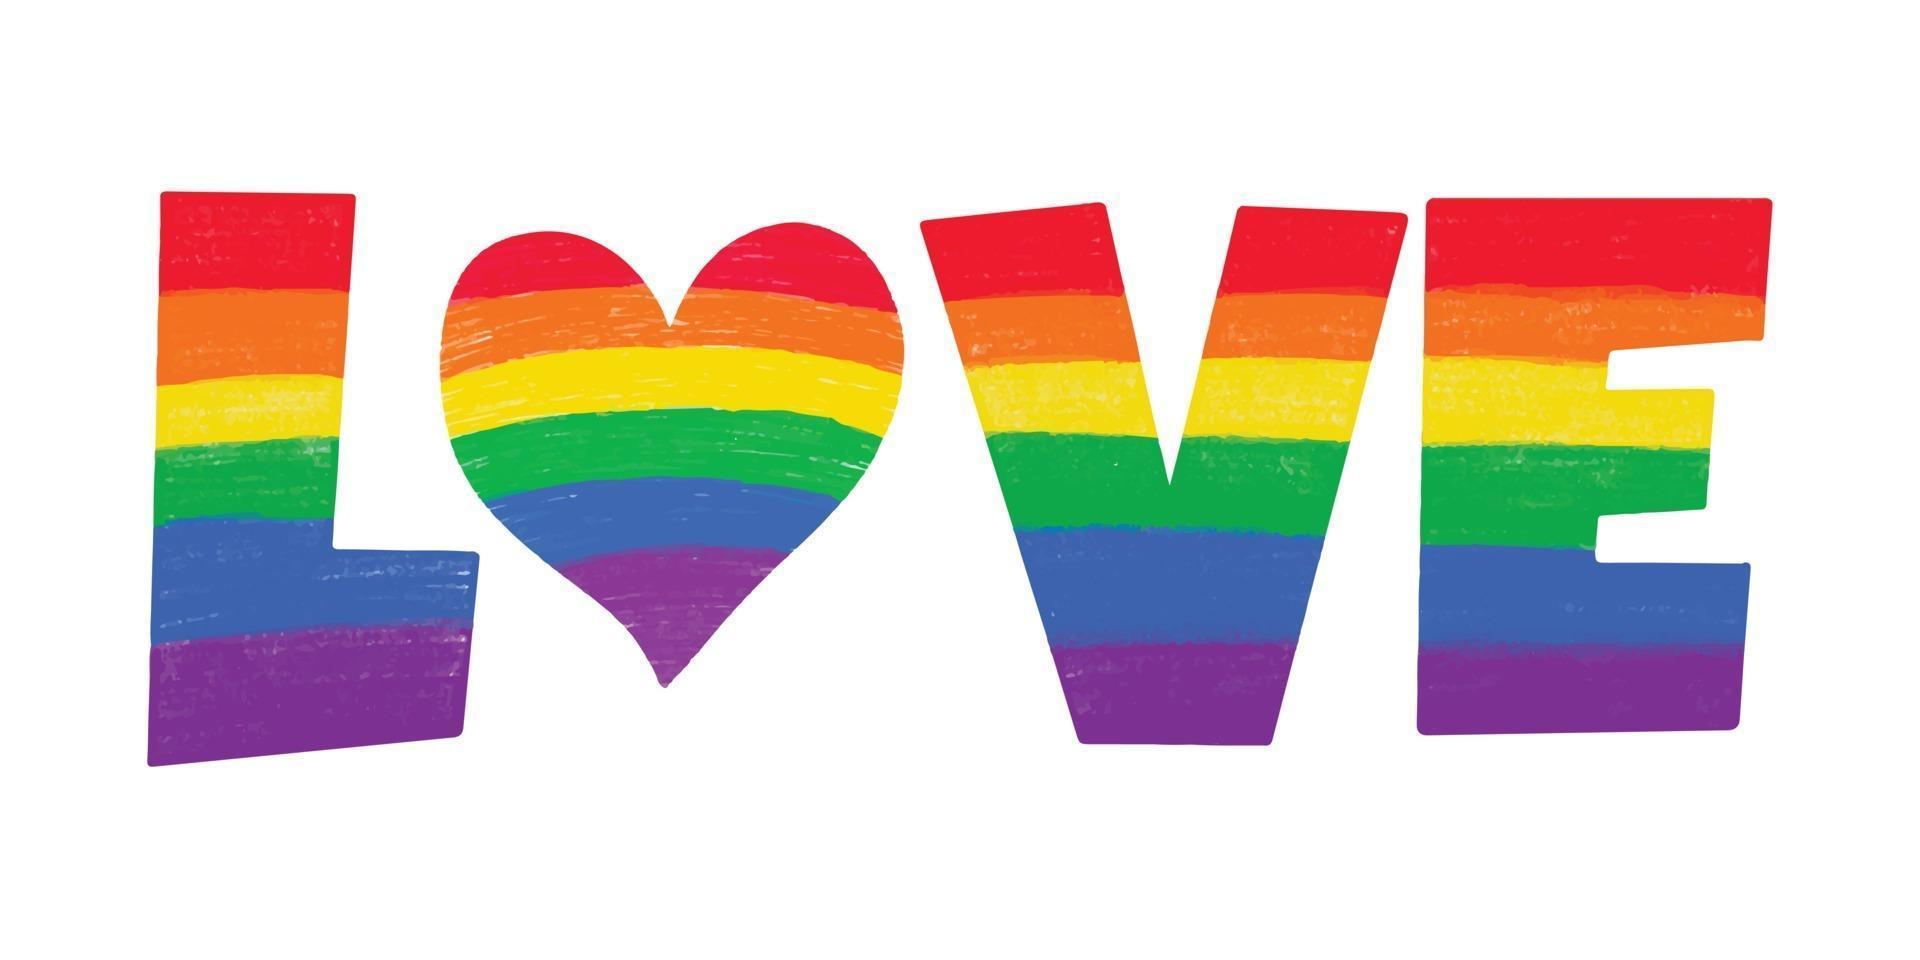 woord liefde gekleurd in regenboog lgbtq gay pride vlag kleuren met hart vector